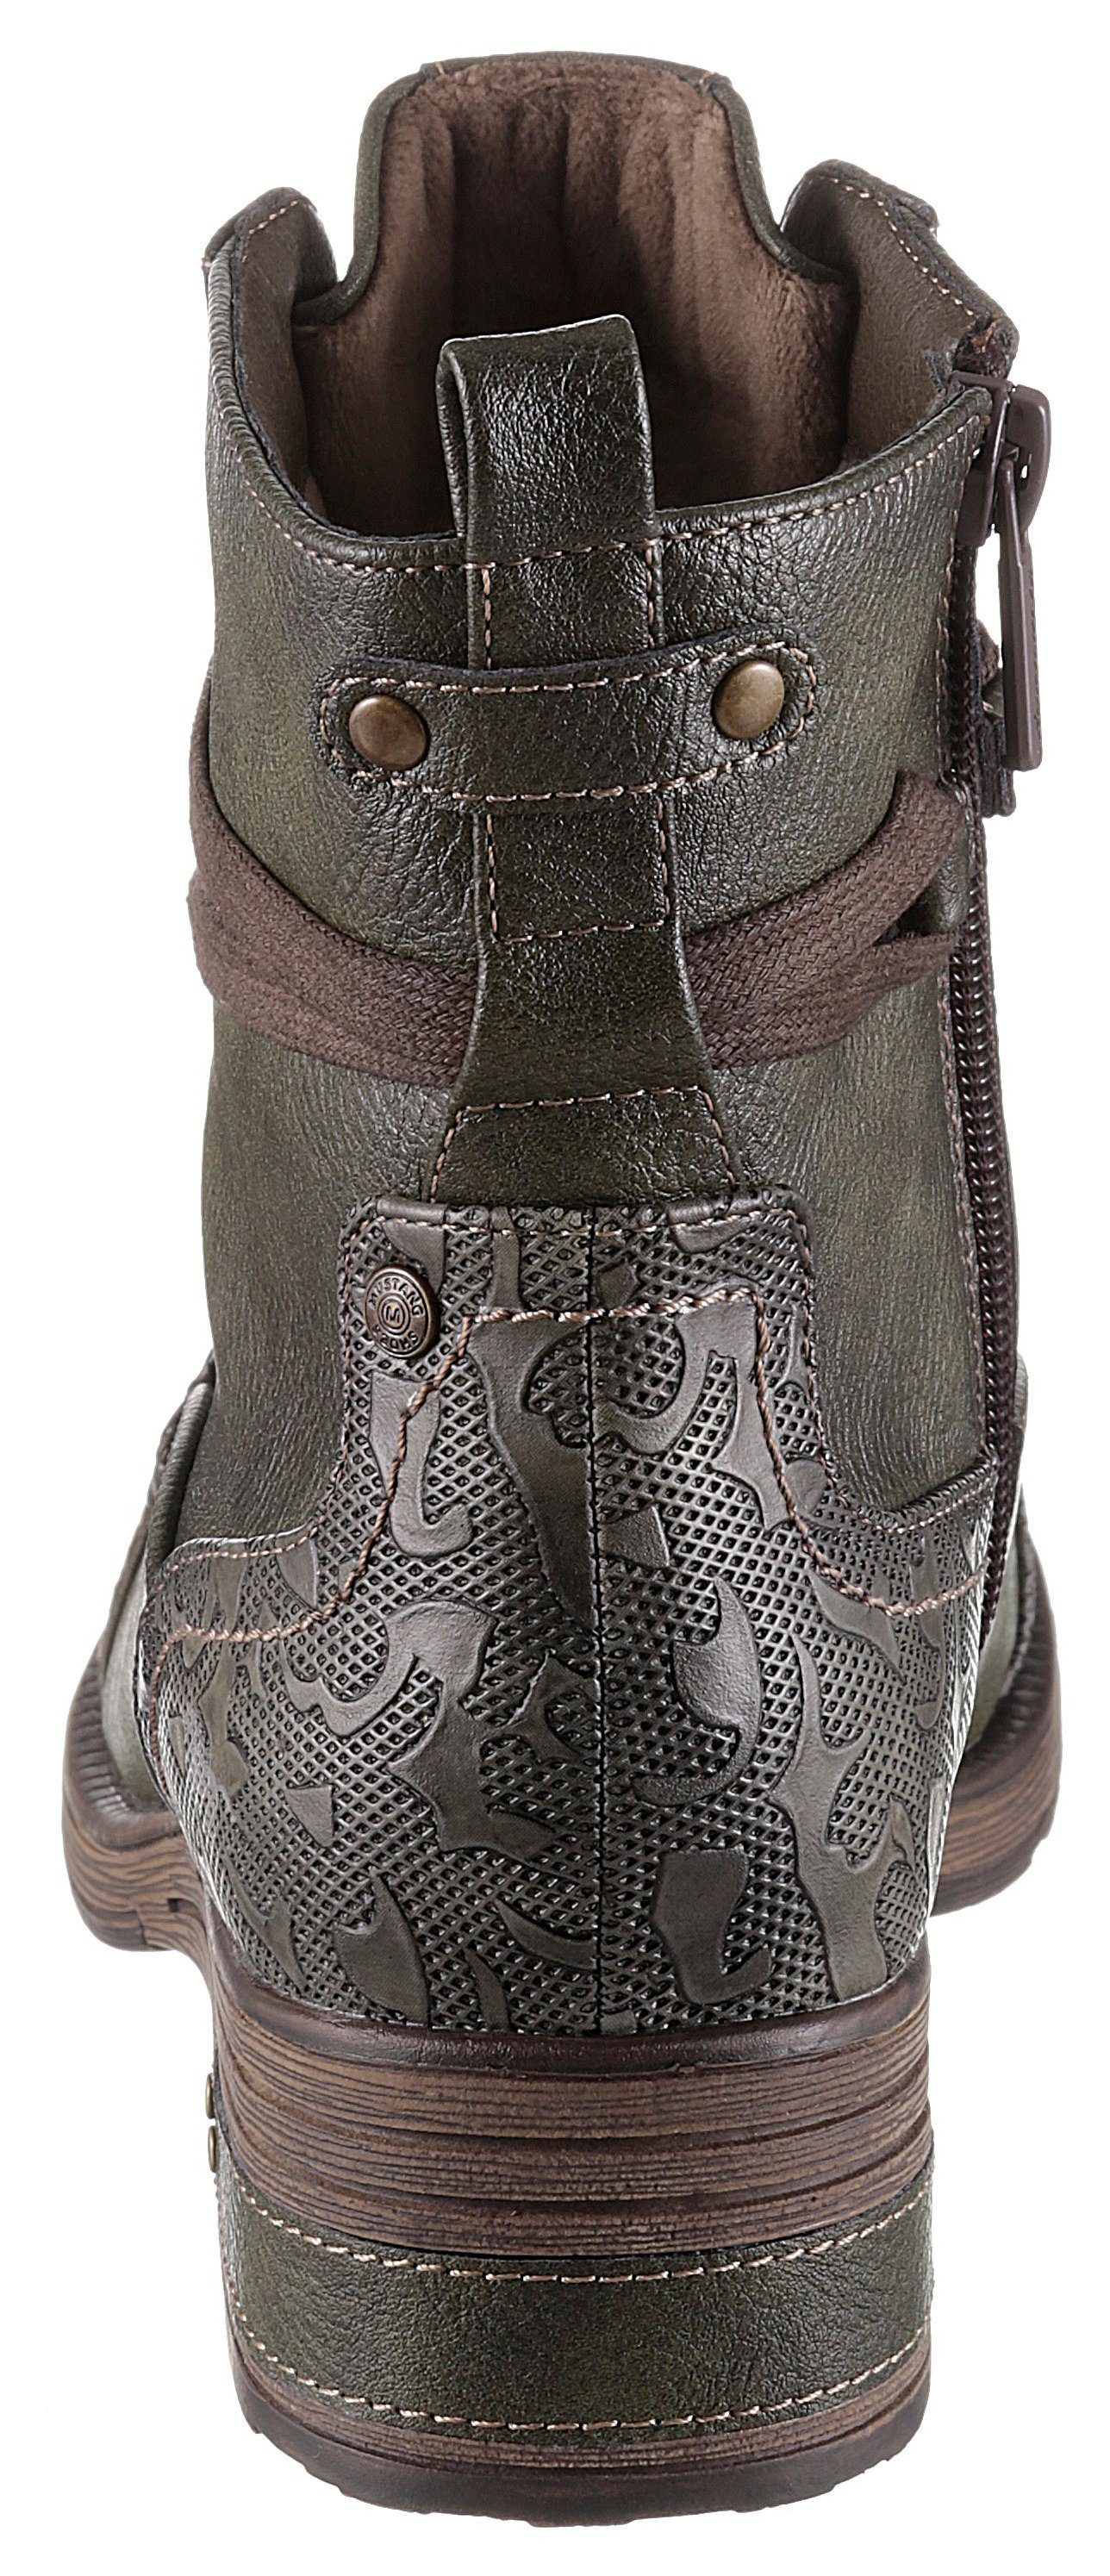 Mustang Shoes Schnürstiefelette olivgrün-used mit Schnürung schaftumspielender